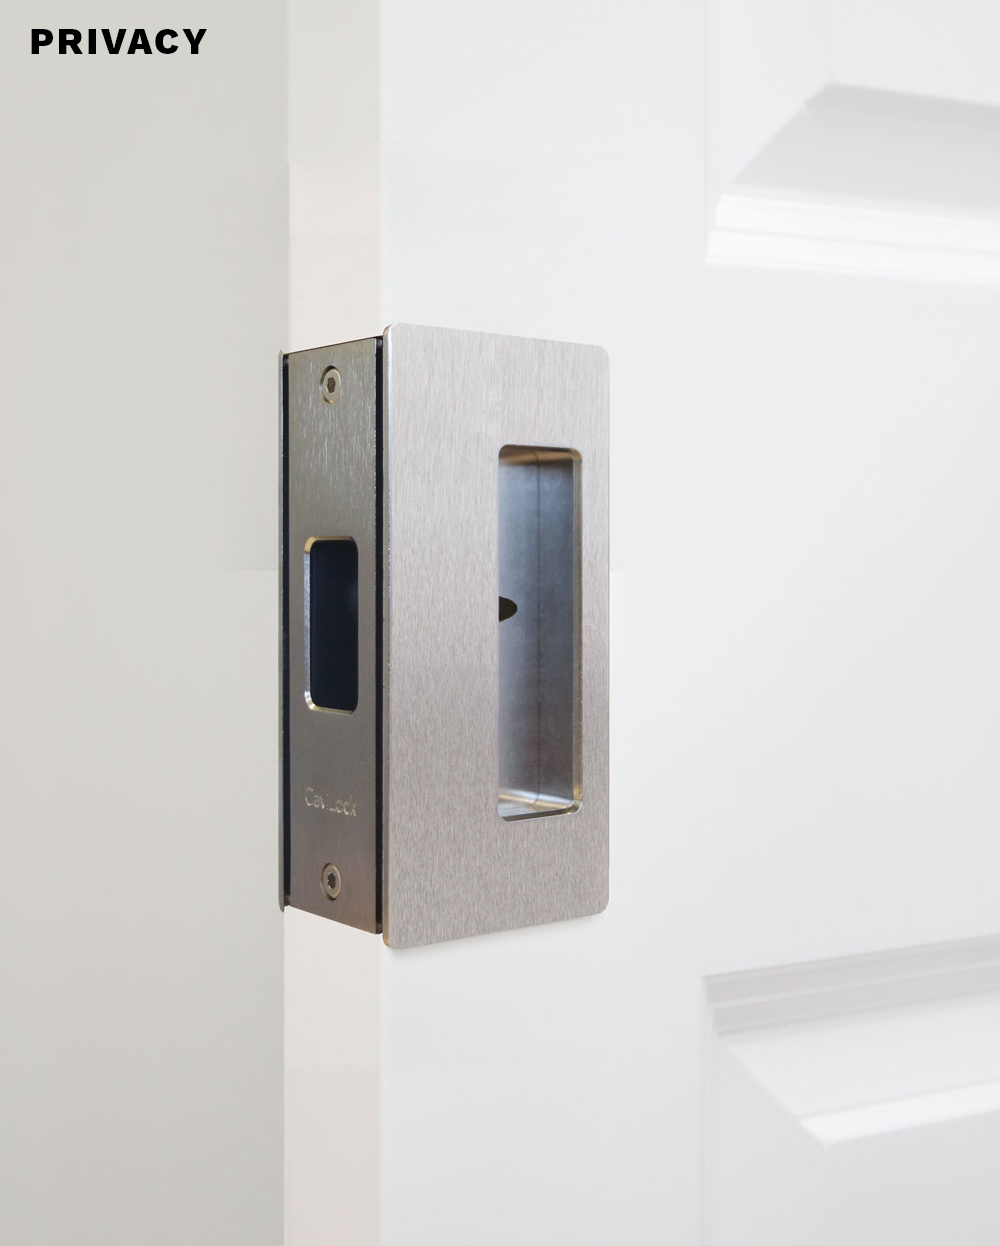 Bifold Door Lock,Pocket Door Lock with Key, Sliding Door Lock Handle Anti  Theft for Barn Wood Furniture Hardware Accessories(Gold)